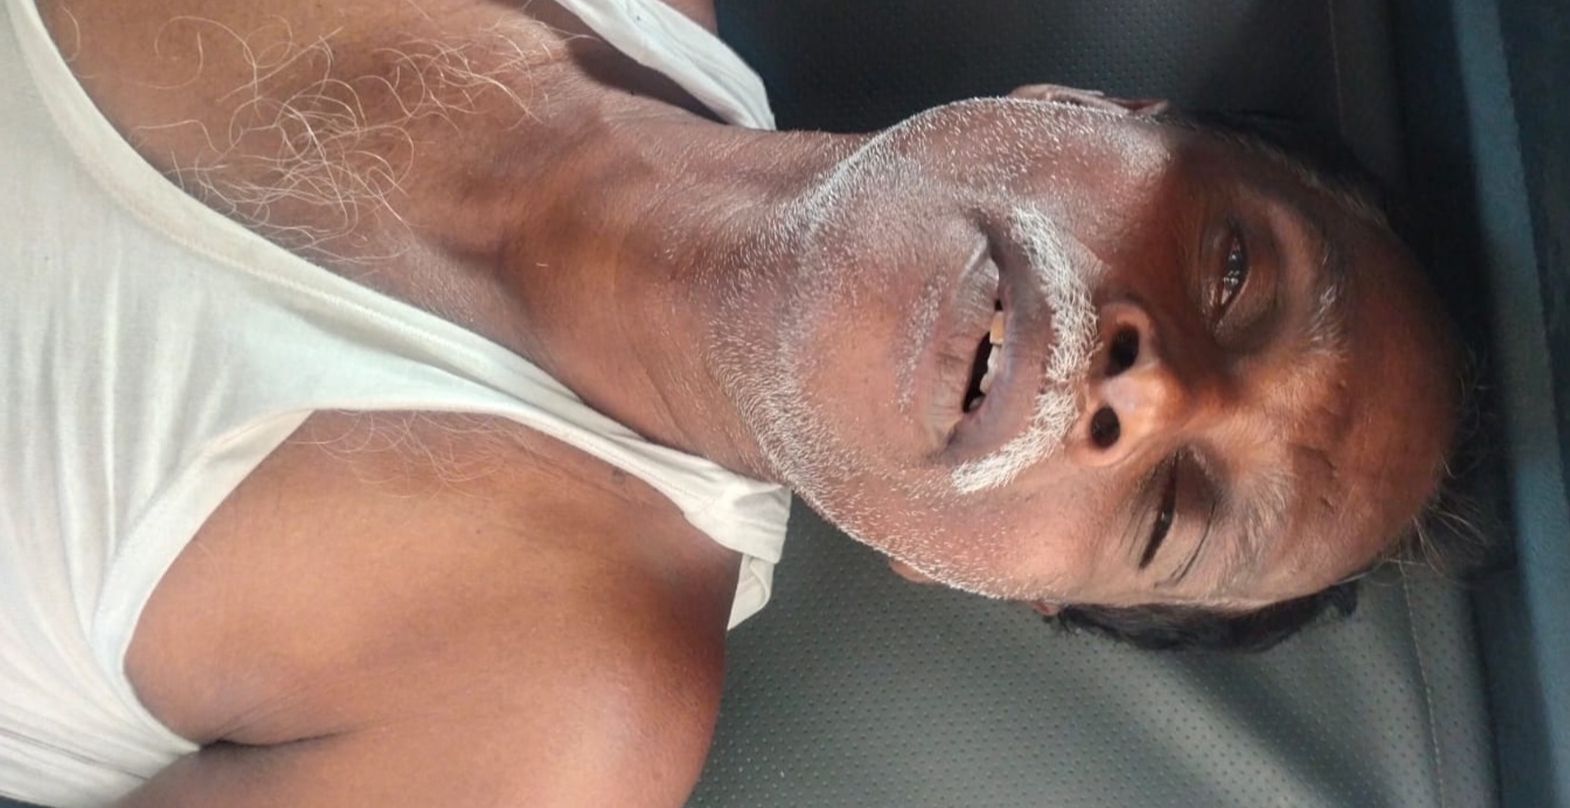 AIADMK official beaten to death - horror near Karur